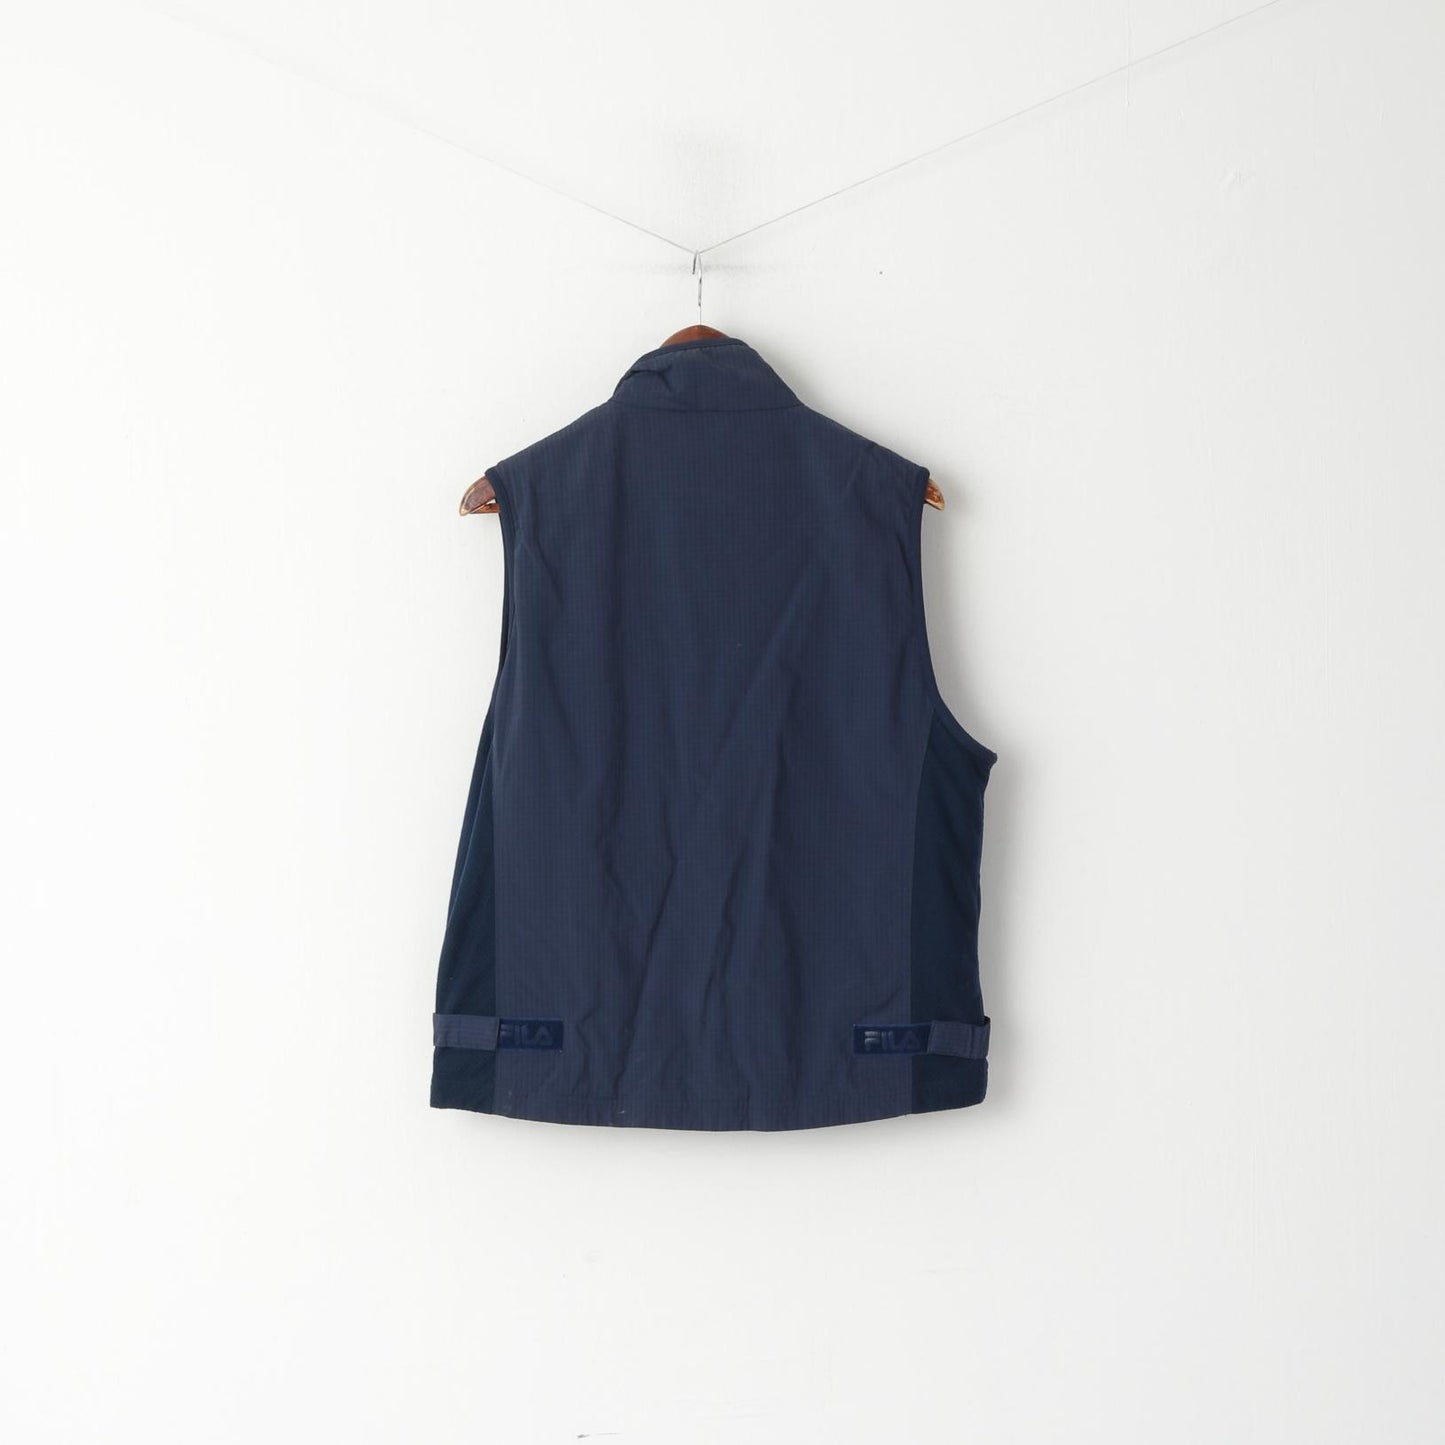 Fila Men S Waistcoat Navy Sport Zip Up Nylon Vest Outdoor Sleeveless Top